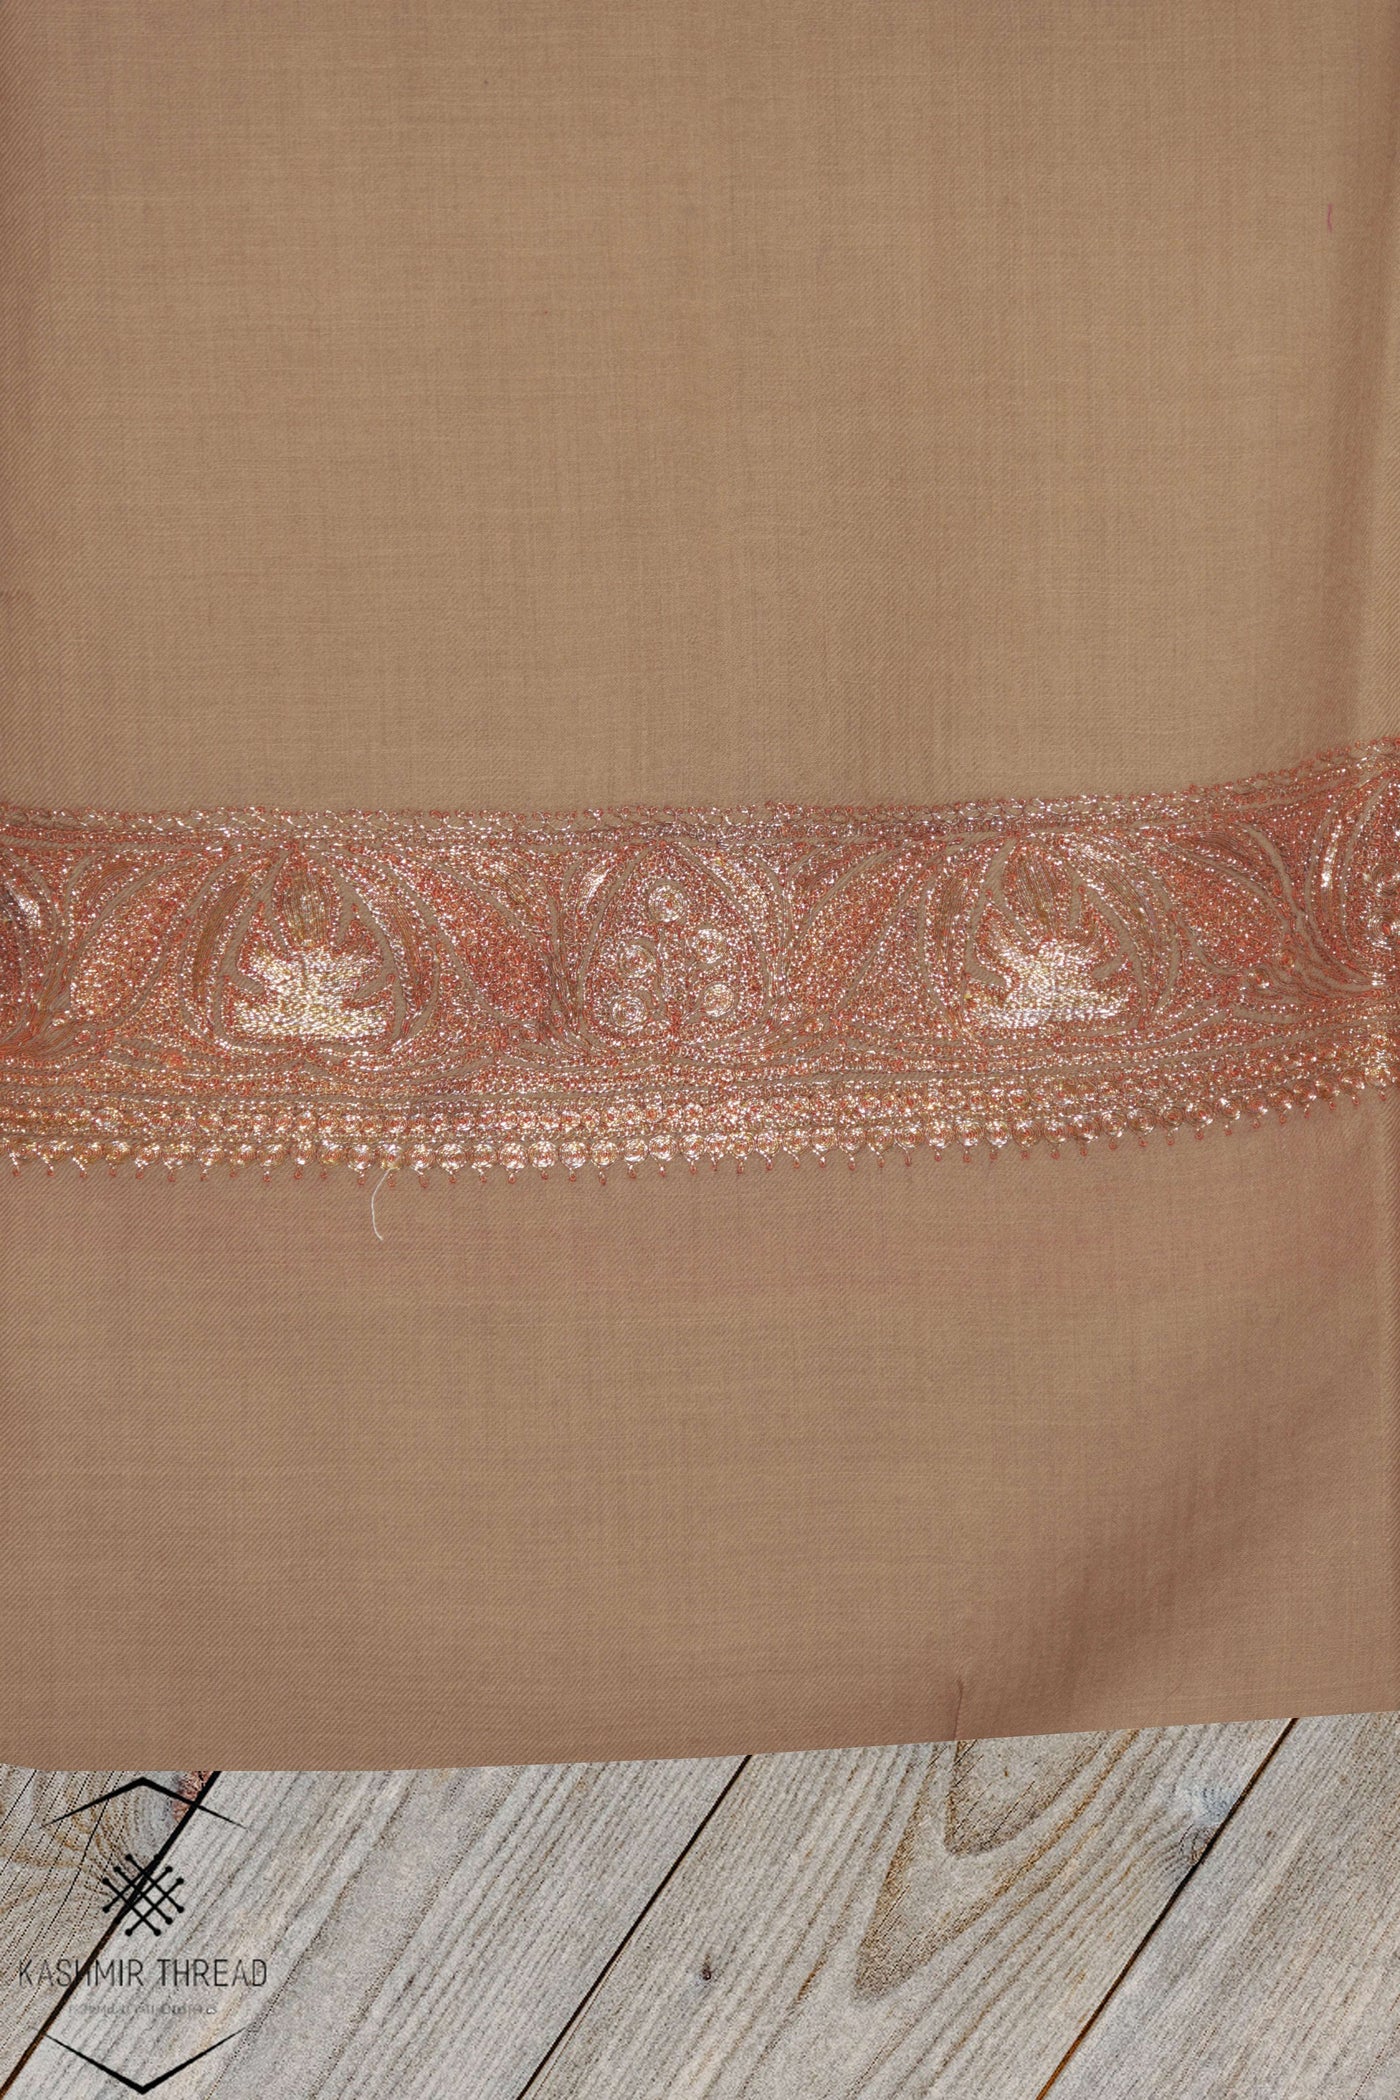 Kashmir Thread shawl Kashmiri Shawl Tilla Embroidery